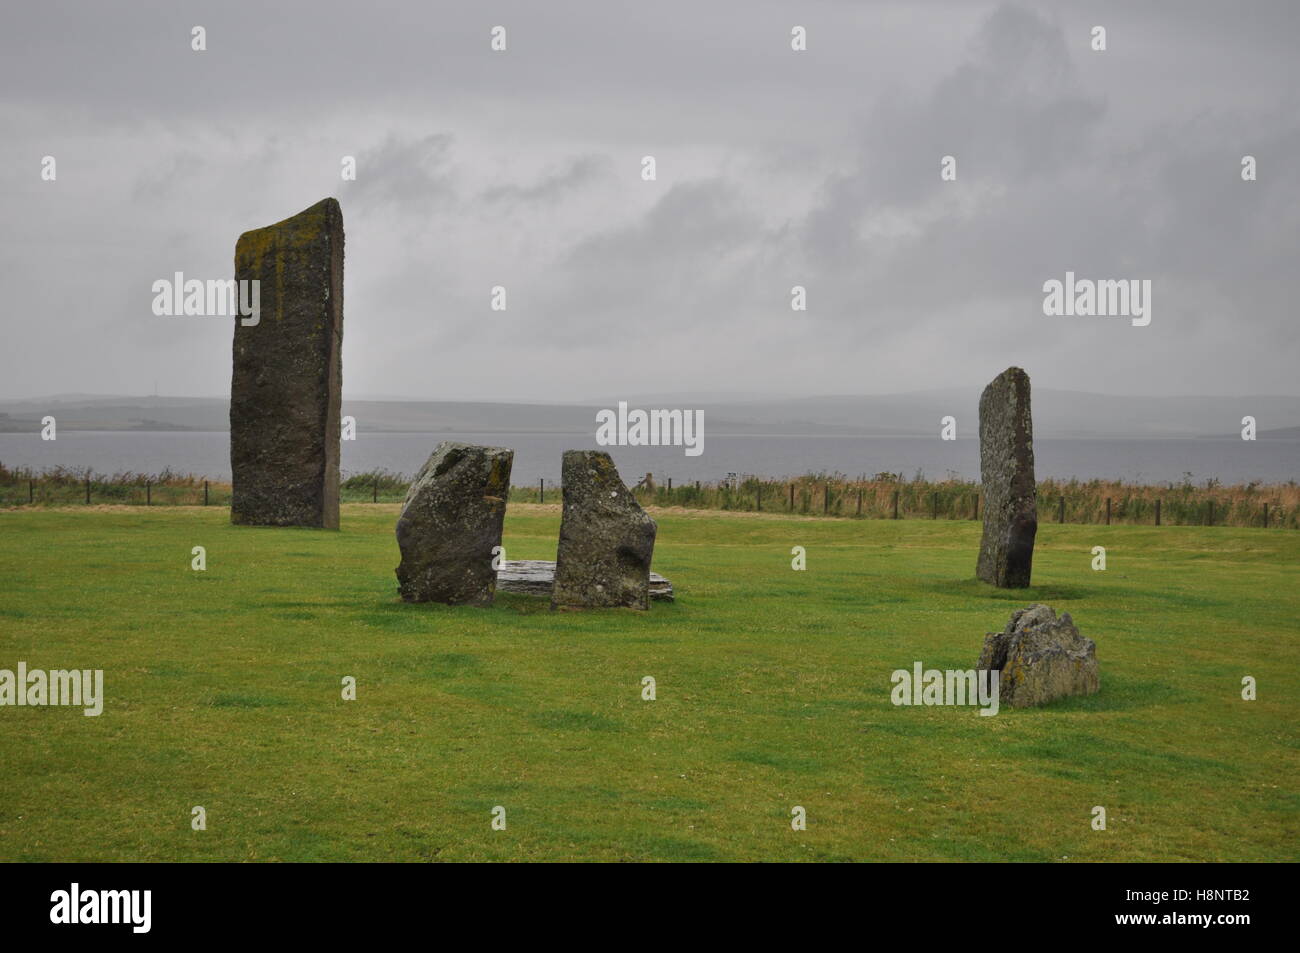 Pierres debout de Stenness, Orkney Mainland, un monument mégalithique qui fait partie du « coeur de l'Orkney néolithique », site classé au patrimoine mondial de l'UNESCO Banque D'Images